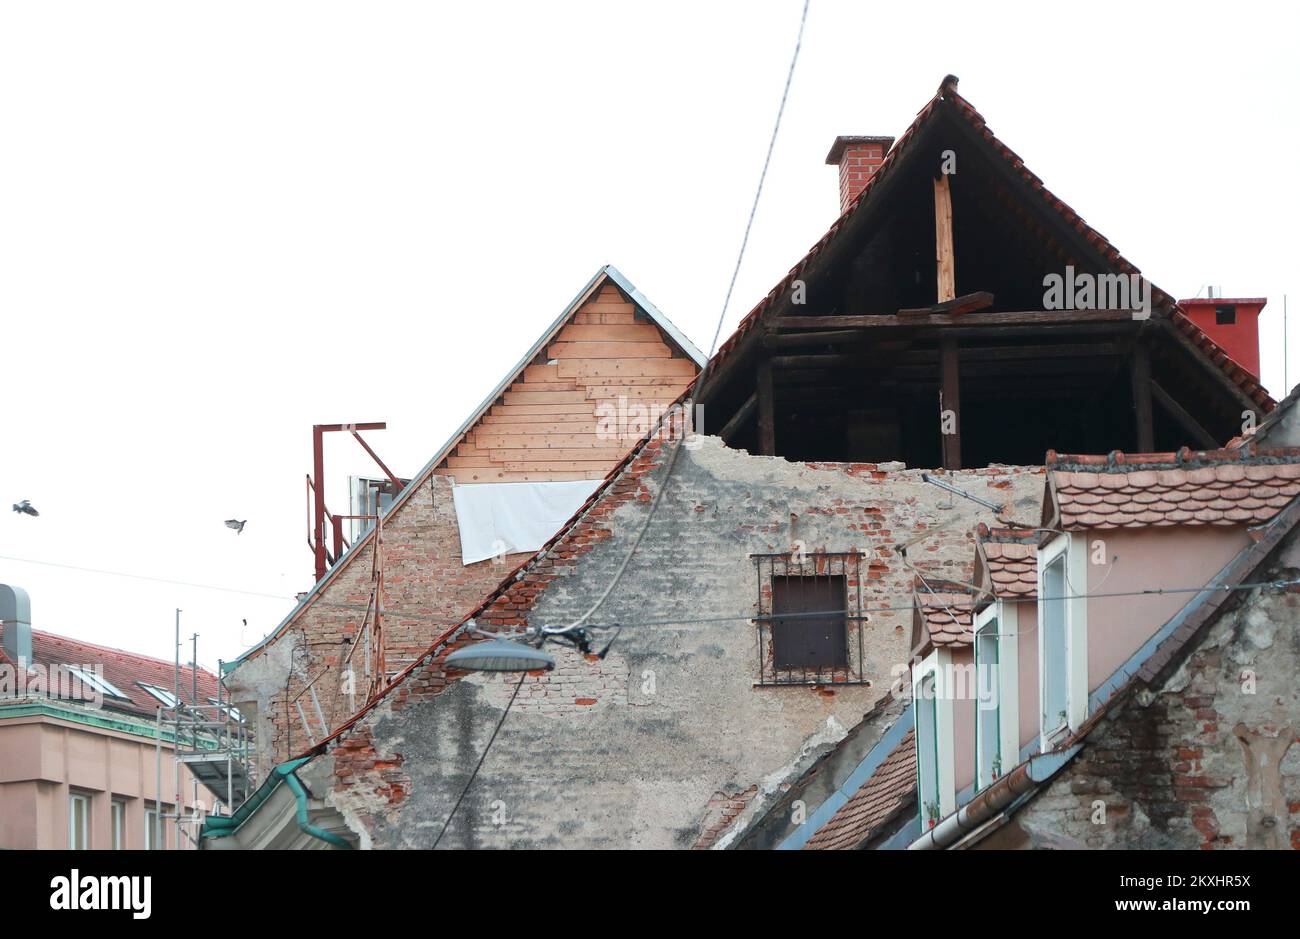 Das Foto wurde am 22. September 2020 aufgenommen und zeigt die Folgen des Erdbebens, das Zagreb, Kroatien, an diesem Tag vor genau einem halben Jahr heimsuchte. Ein Erdbeben in Zagreb mit einer Stärke von 5,5 auf der Richterskala ereignete sich am Sonntag, den 22. März 2020 um 6:24 UHR IN Zagreb. Das Euromediterrane Seismologische Zentrum berichtete, dass sich das Epizentrum 7 Kilometer nördlich des Zagreber Zentrums in einer Tiefe von 10 km befand Foto: Sanjin Strukic/PIXSELL Stockfoto